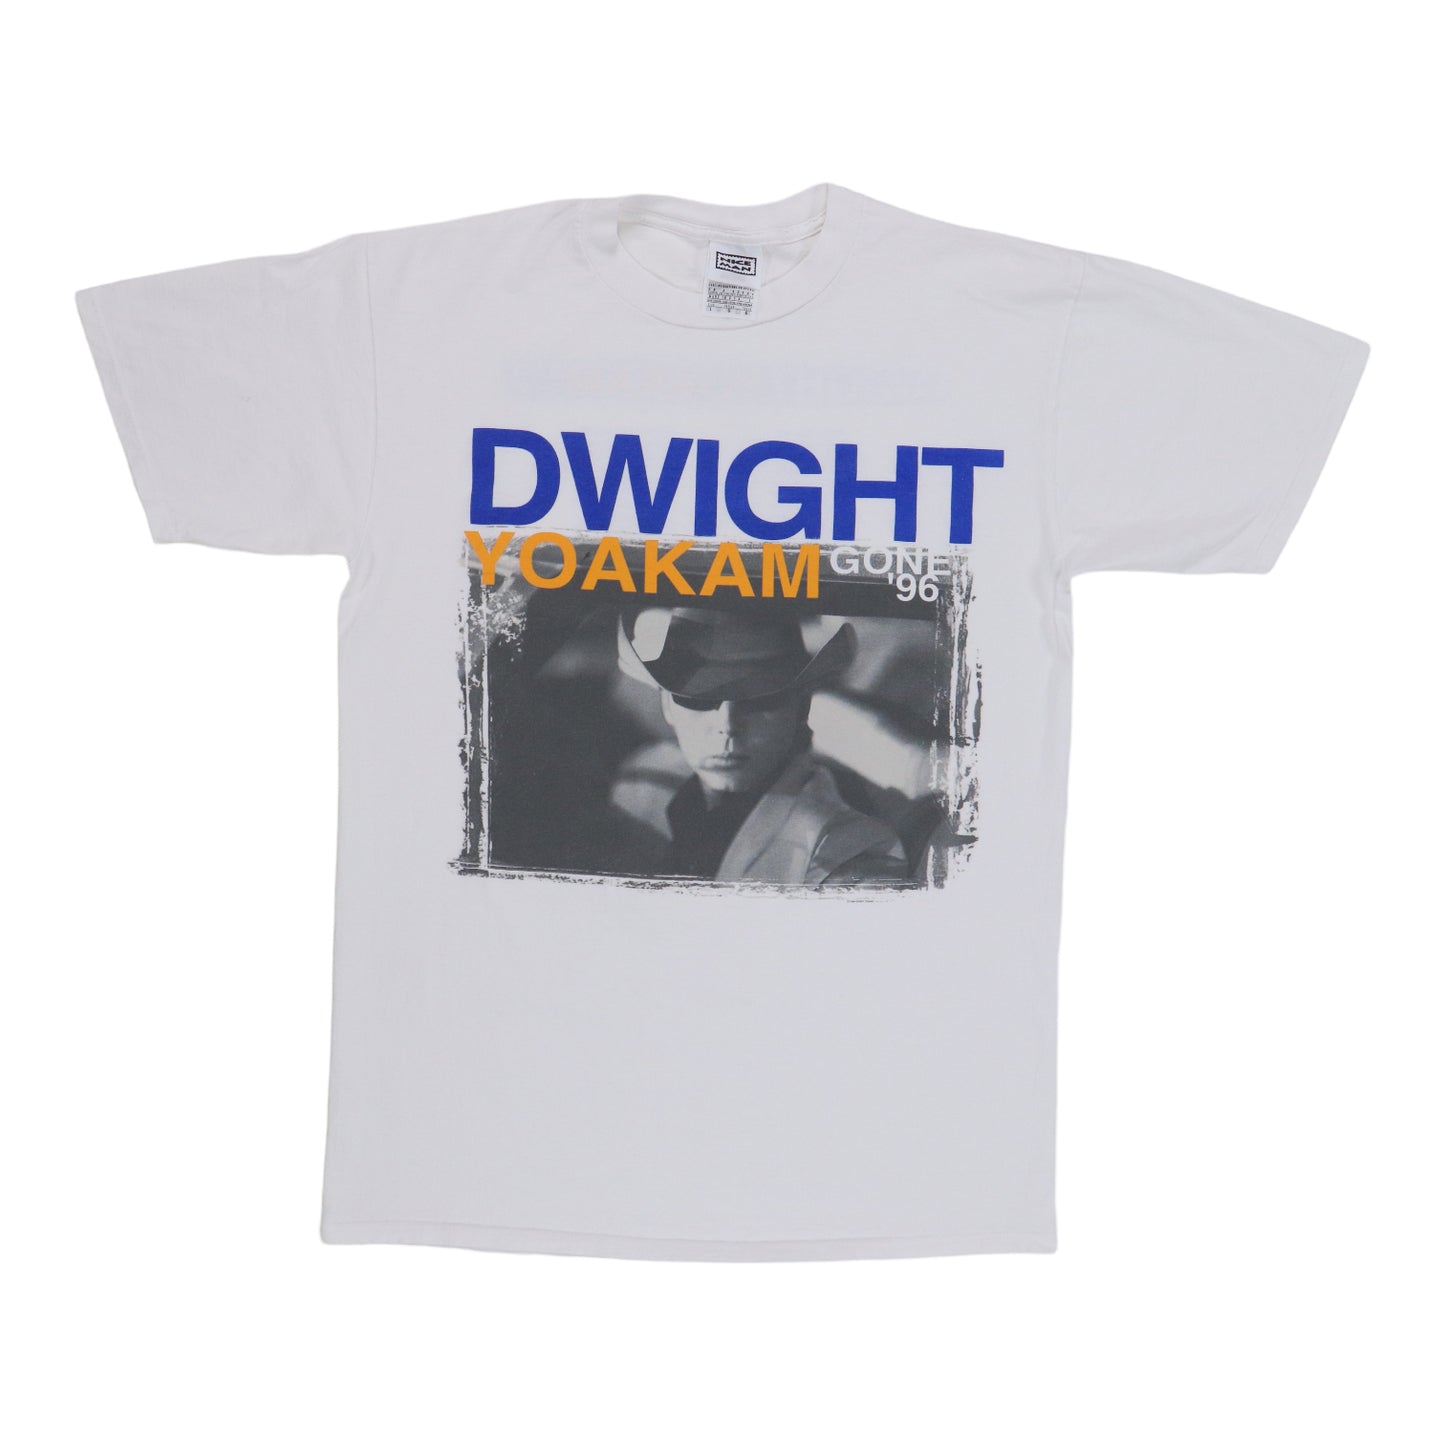 1996 Dwight Yoakum Gone Tour Shirt